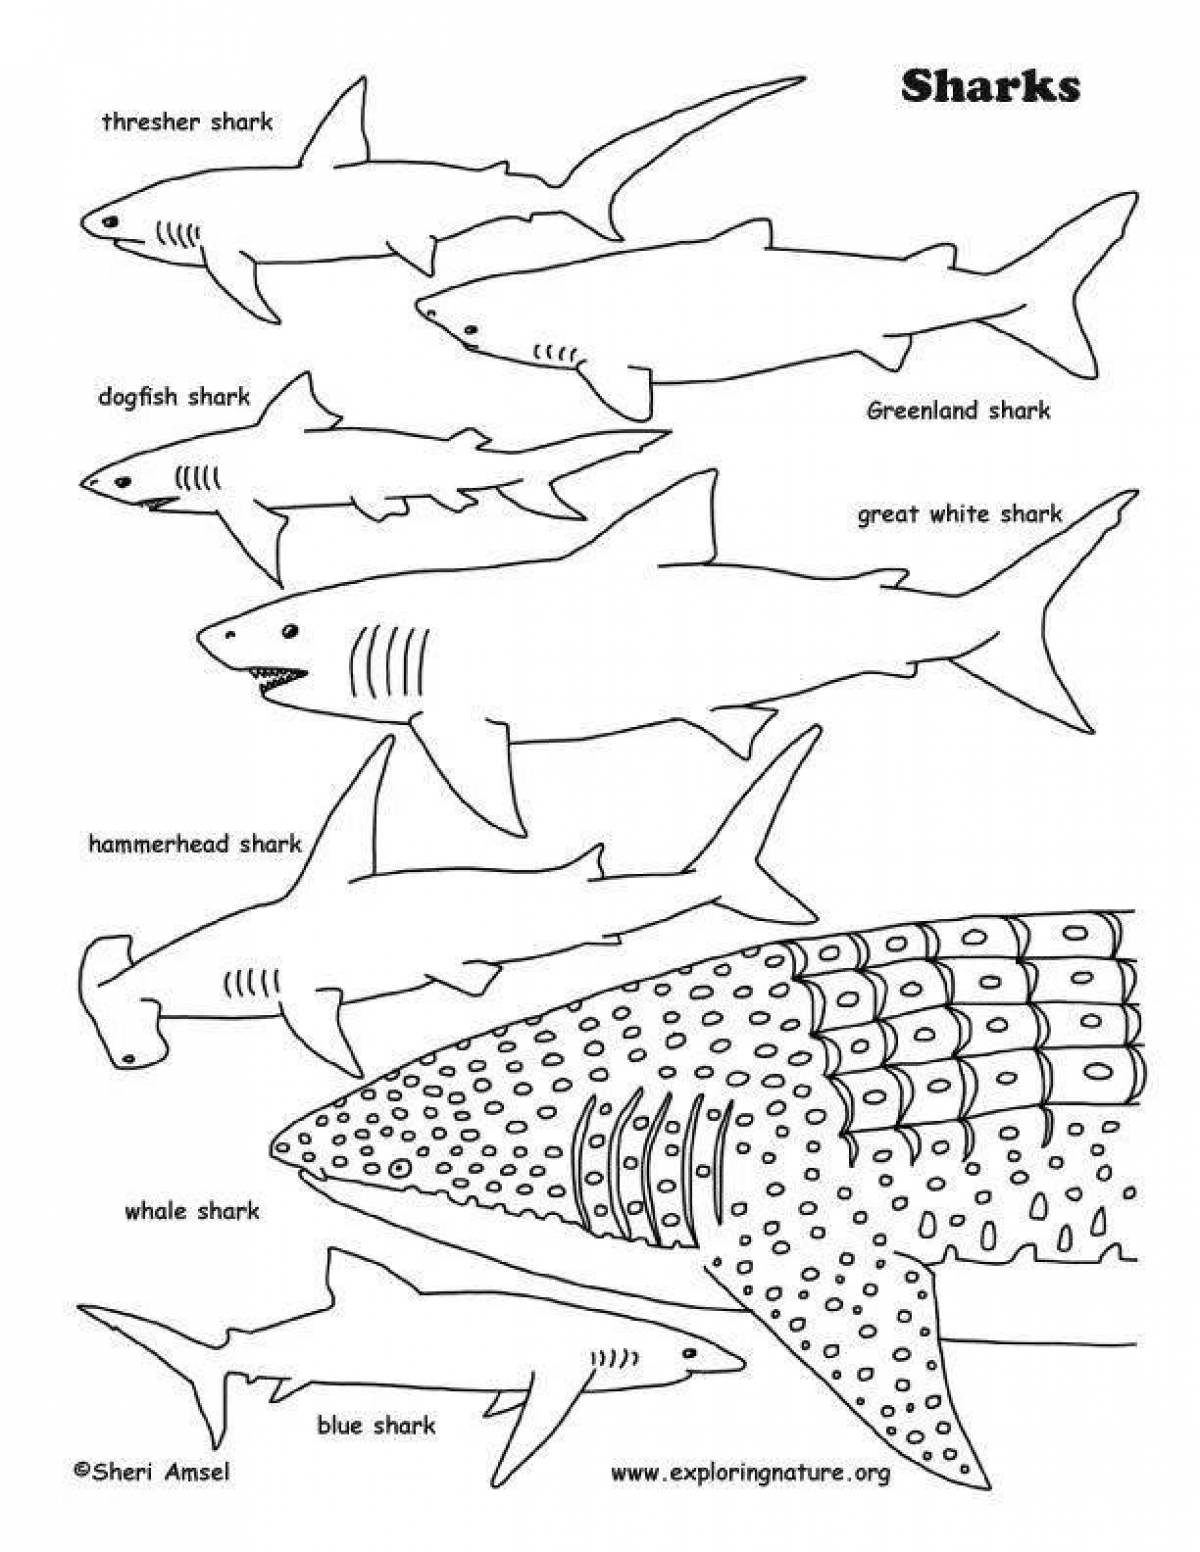 Китовая акула раскраска для детей